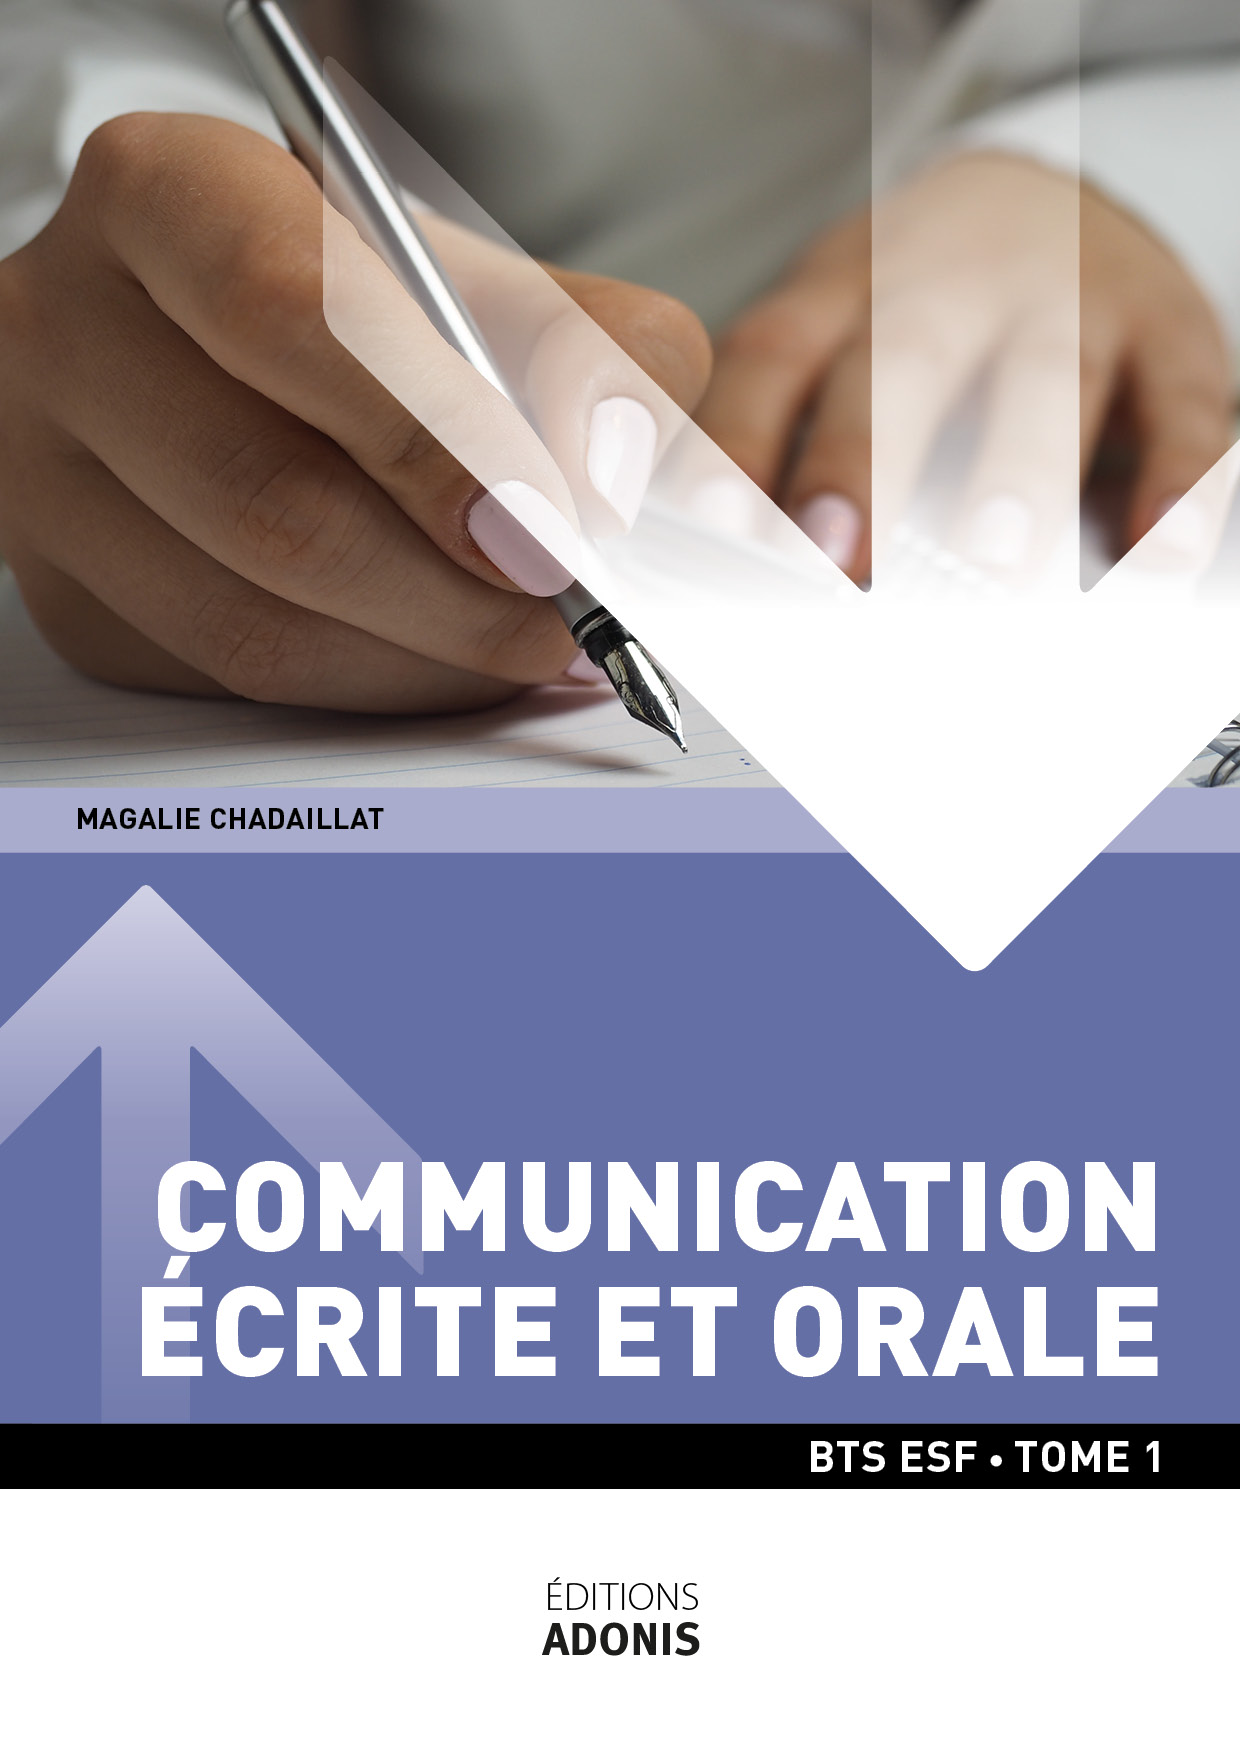 BTS ESF - Communication écrite et orale